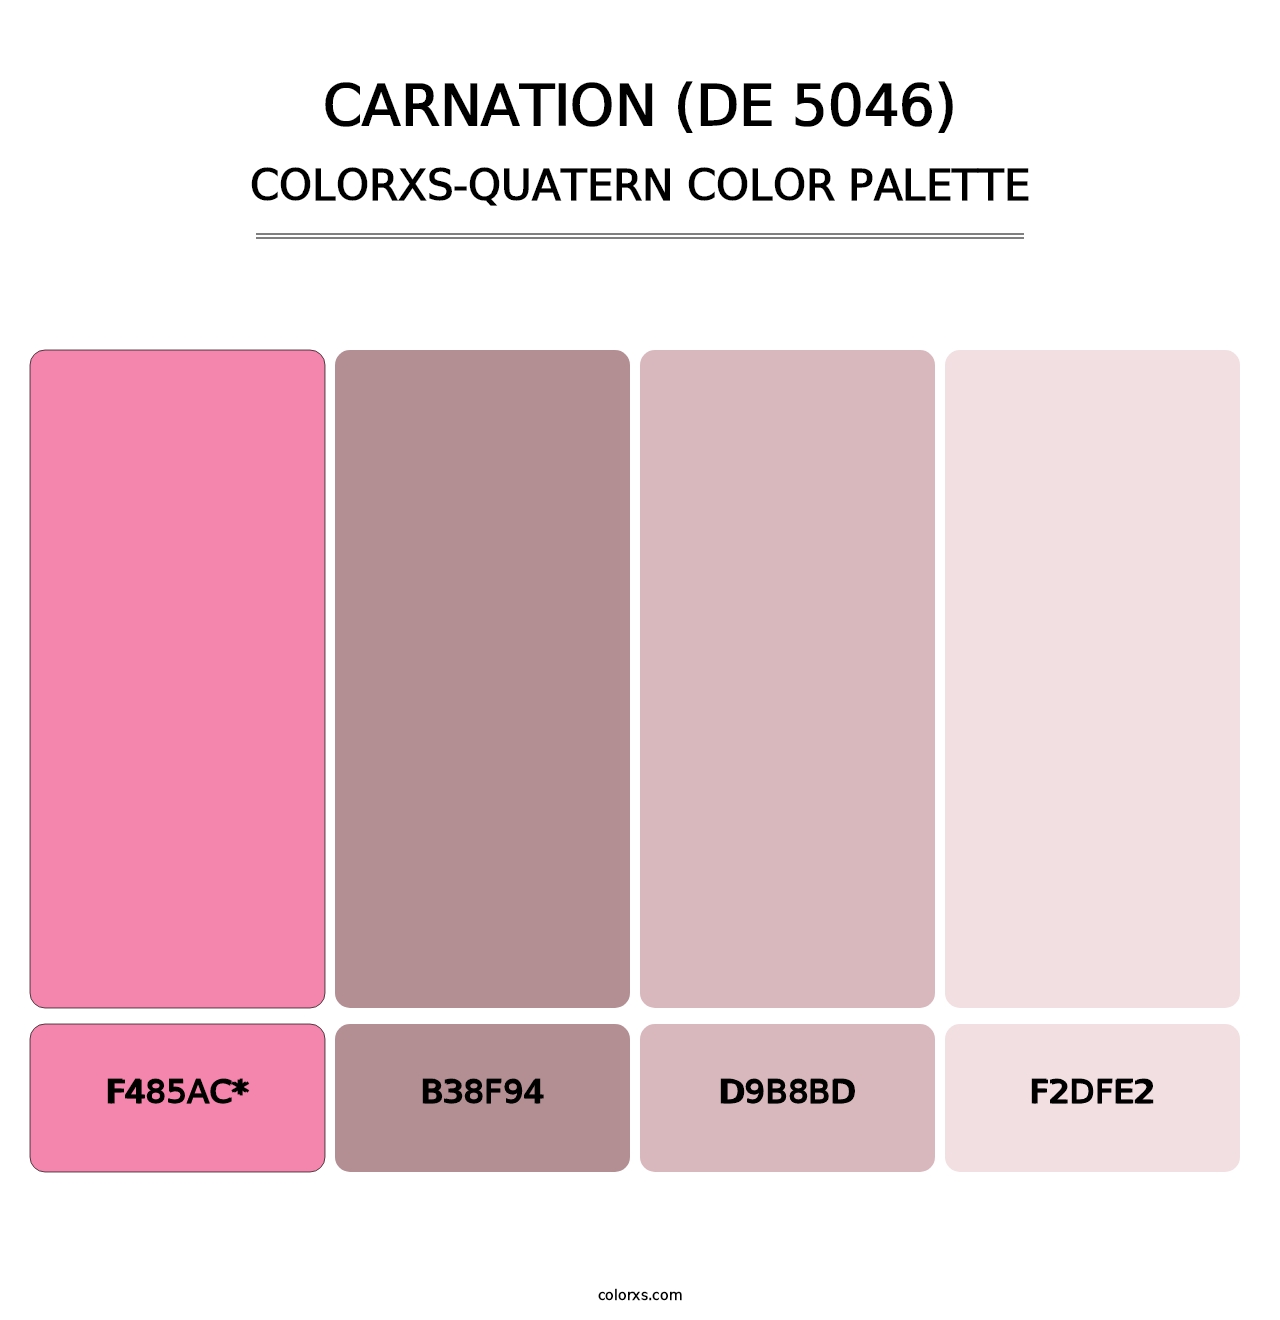 Carnation (DE 5046) - Colorxs Quatern Palette